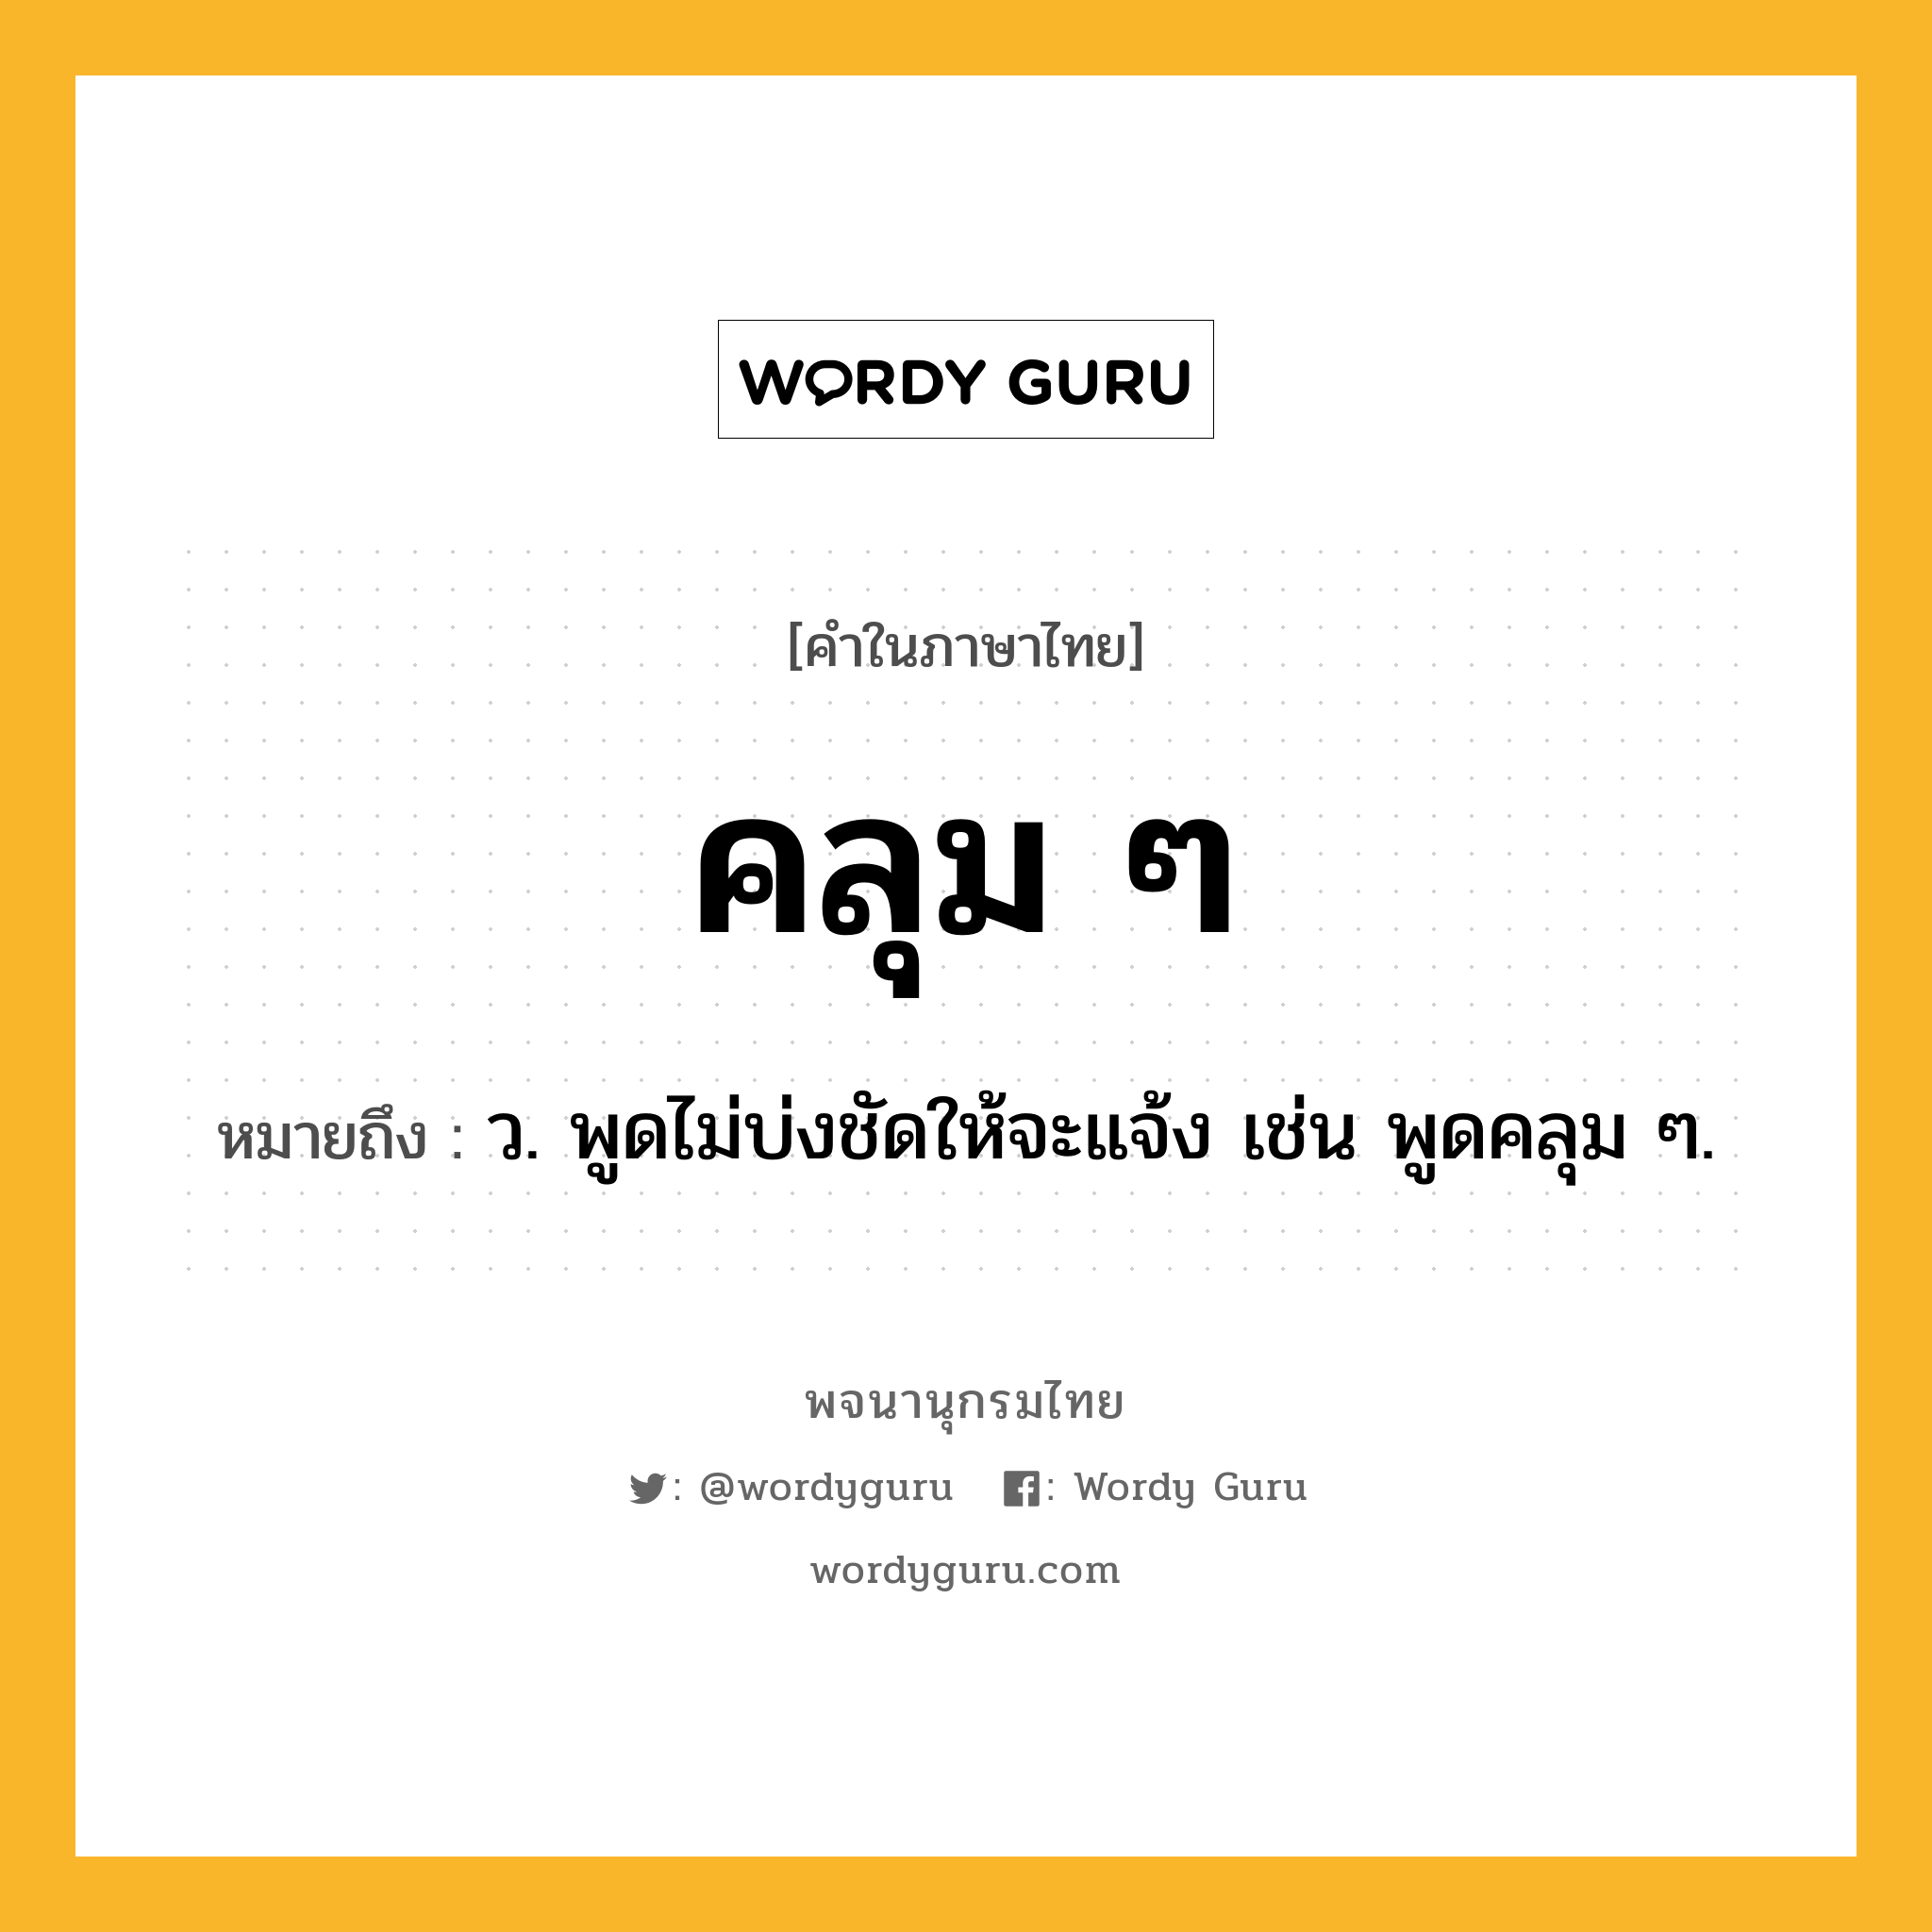 คลุม ๆ หมายถึงอะไร?, คำในภาษาไทย คลุม ๆ หมายถึง ว. พูดไม่บ่งชัดให้จะแจ้ง เช่น พูดคลุม ๆ.